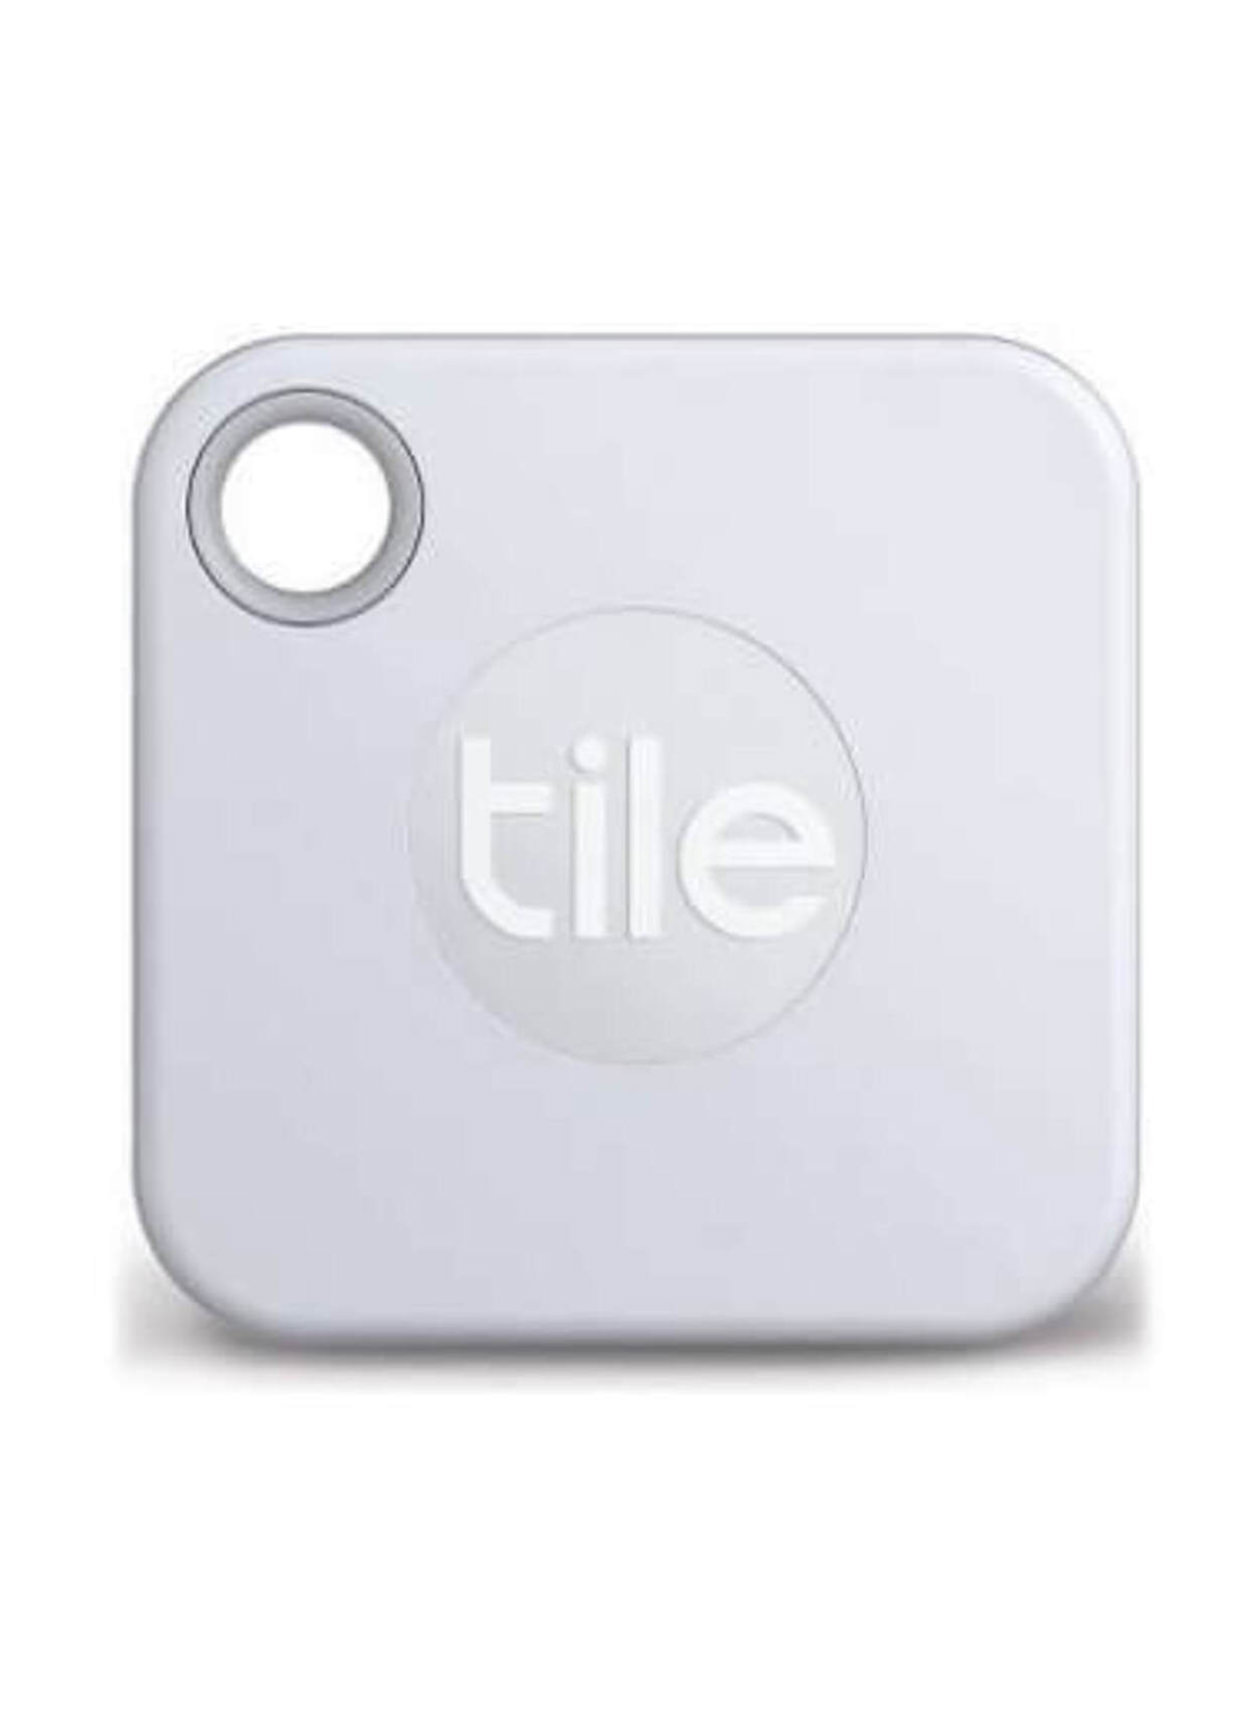 Tile White Mate - Custom Sleeve Packaging